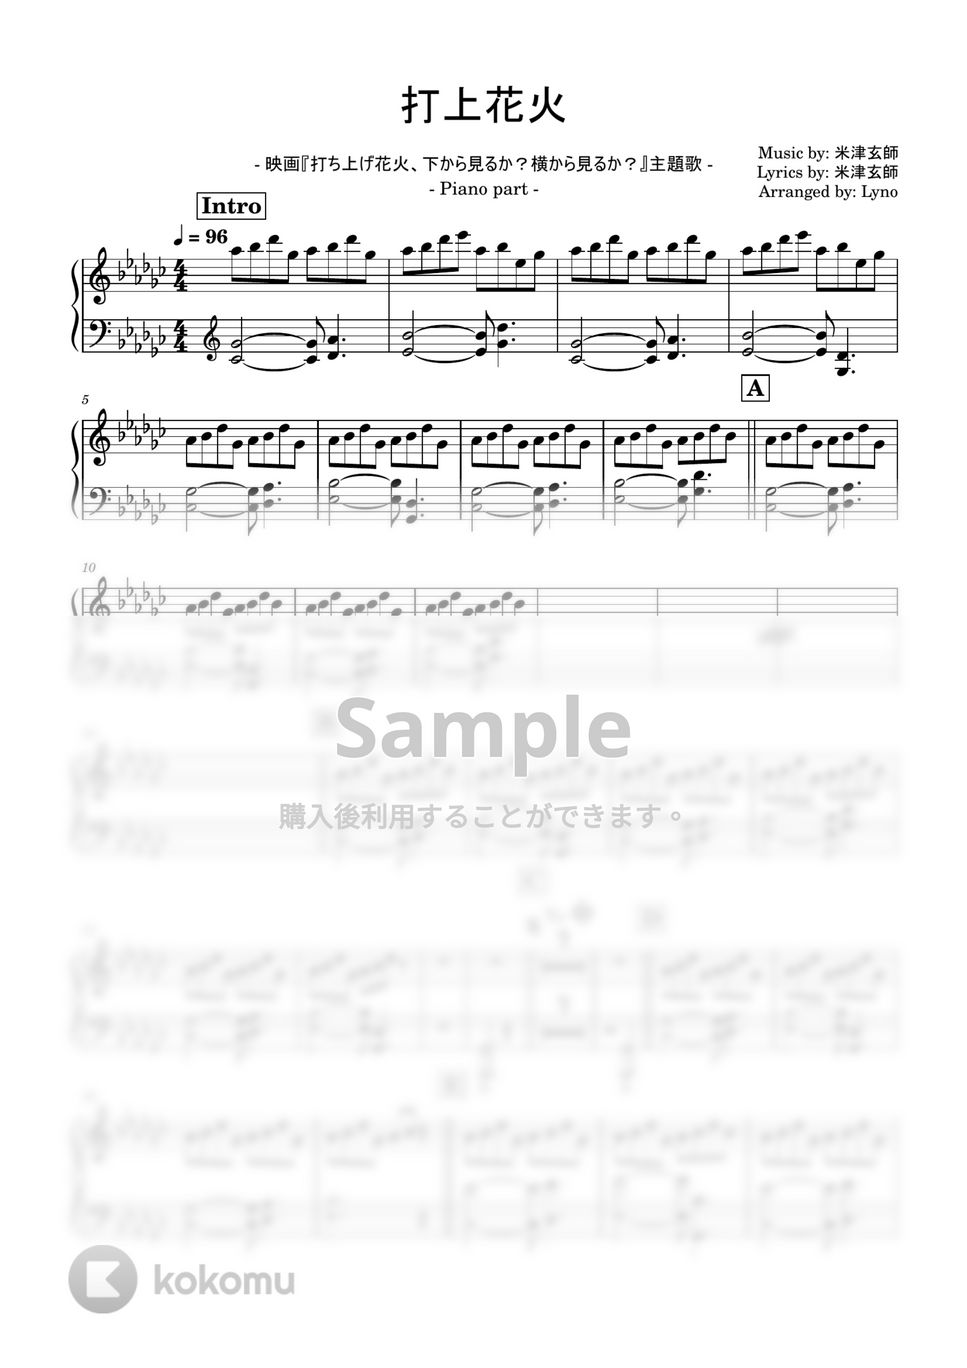 米津玄師 - 打上花火（無料楽譜） (ピアノパート譜) by Ray